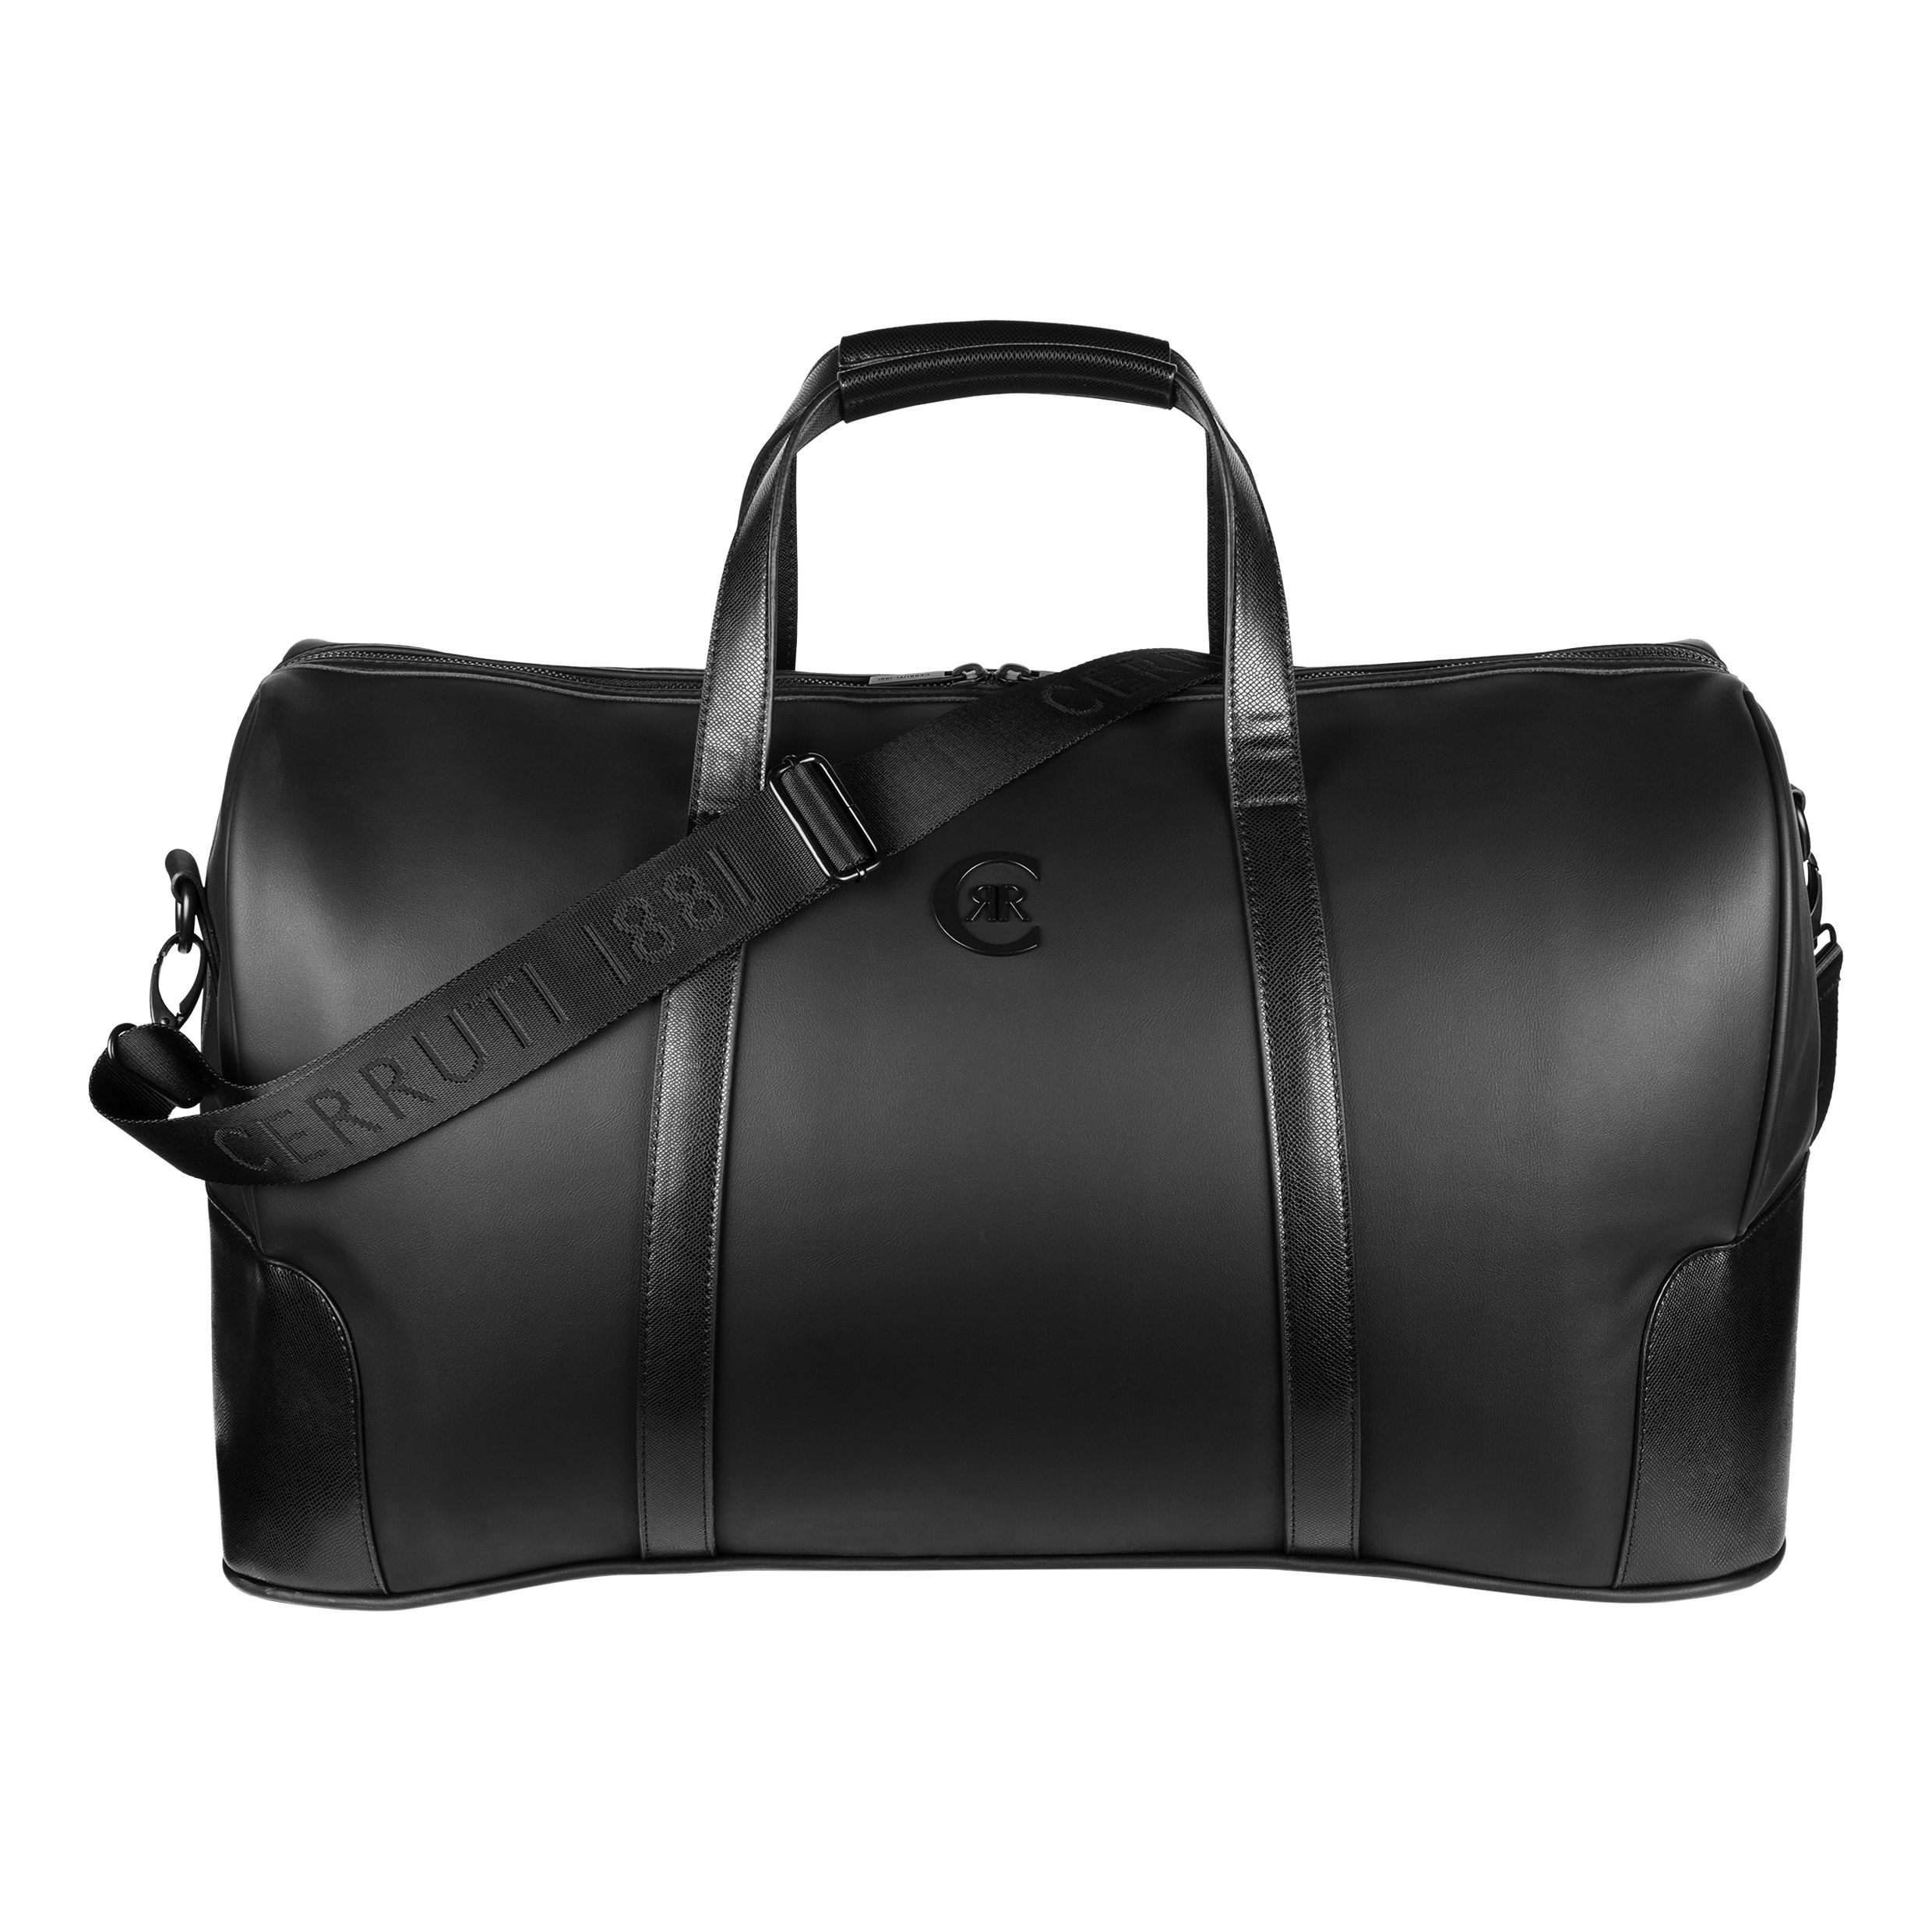 Cerruti 1881 Travel bag Forbes Black